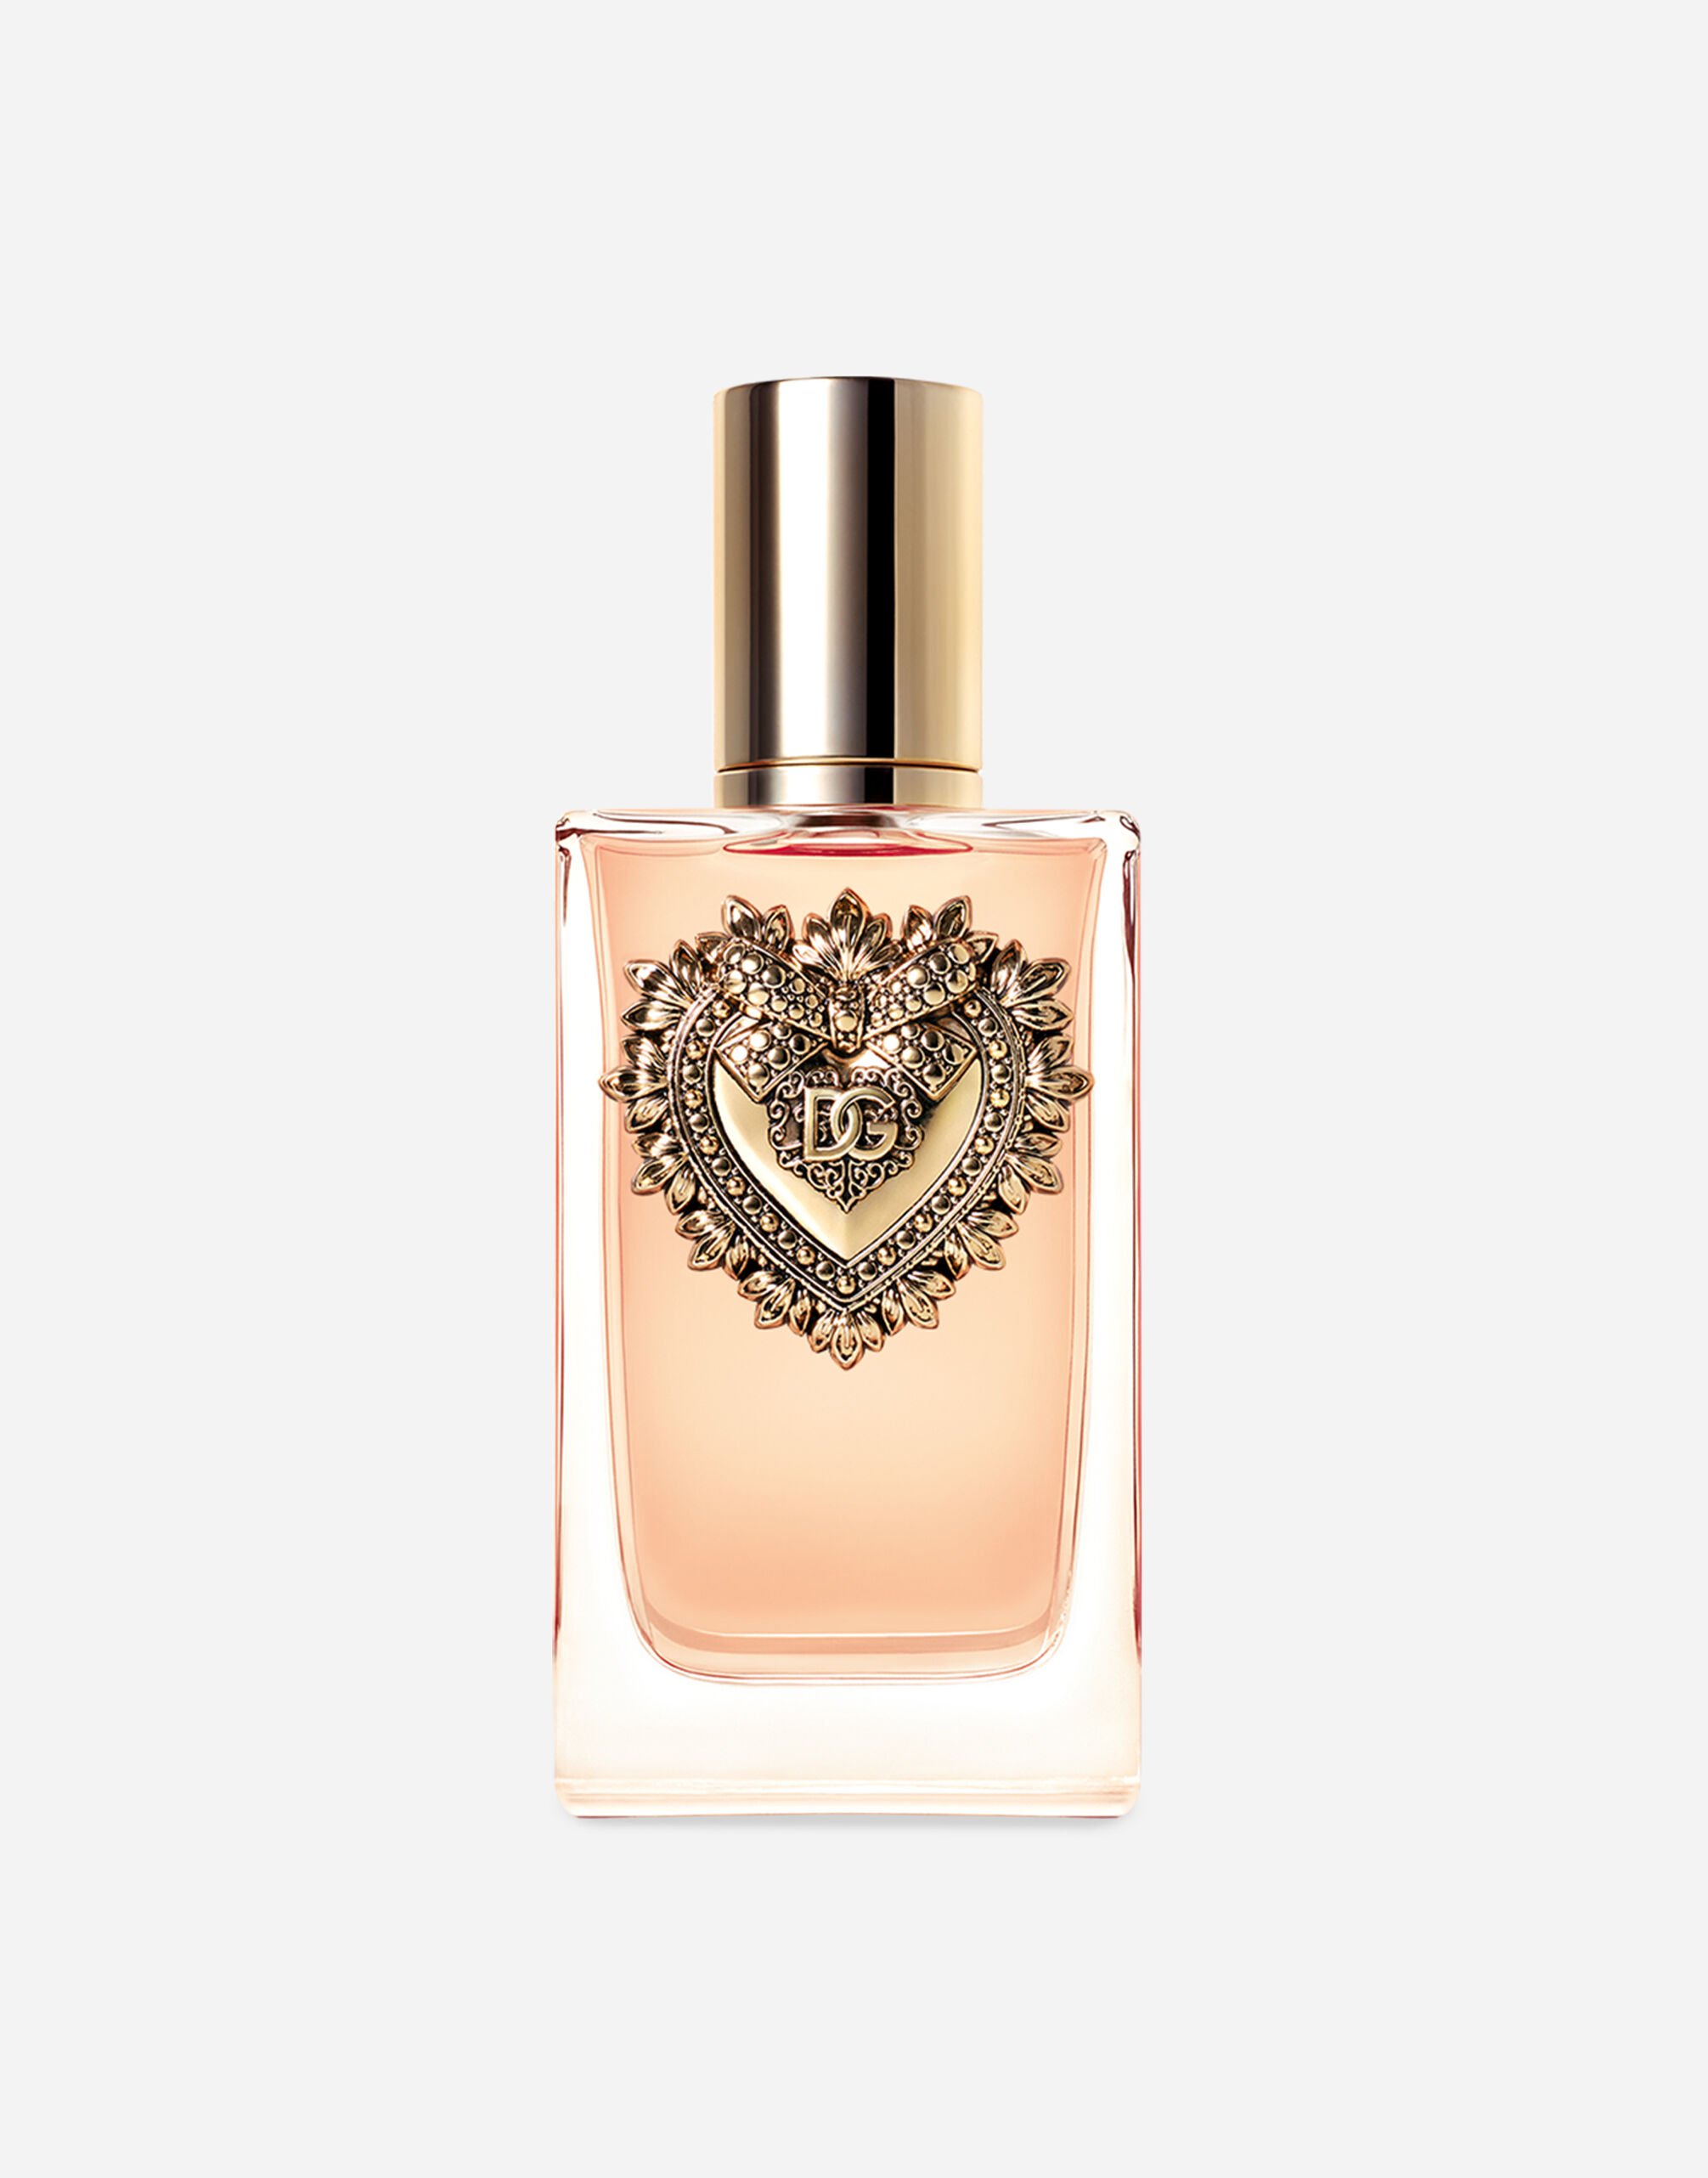 Dolce & Gabbana Devotion Eau de Parfum - VP003BVP000